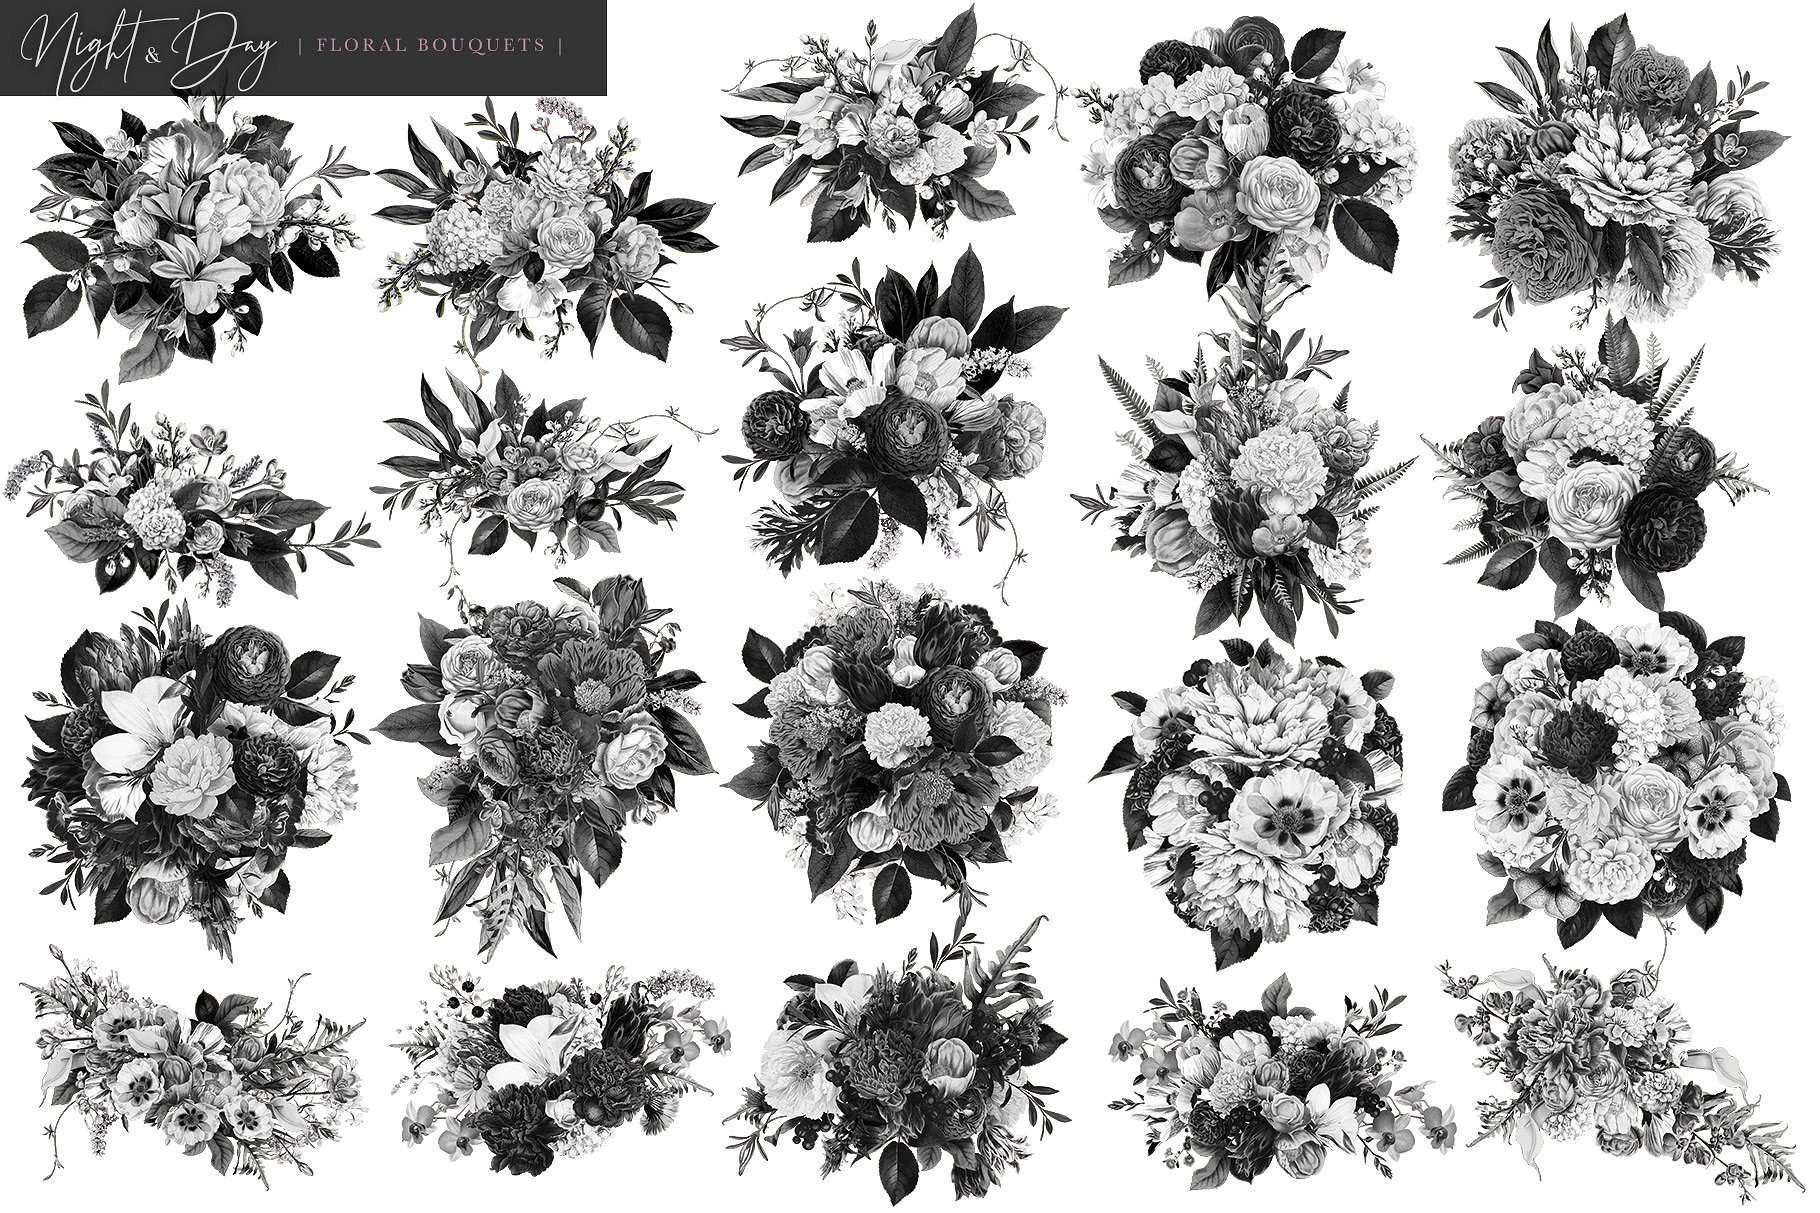 繁花似锦复古花卉插画素材[昼夜和白日两个版本] Night and Day Floral Bouquets插图(7)